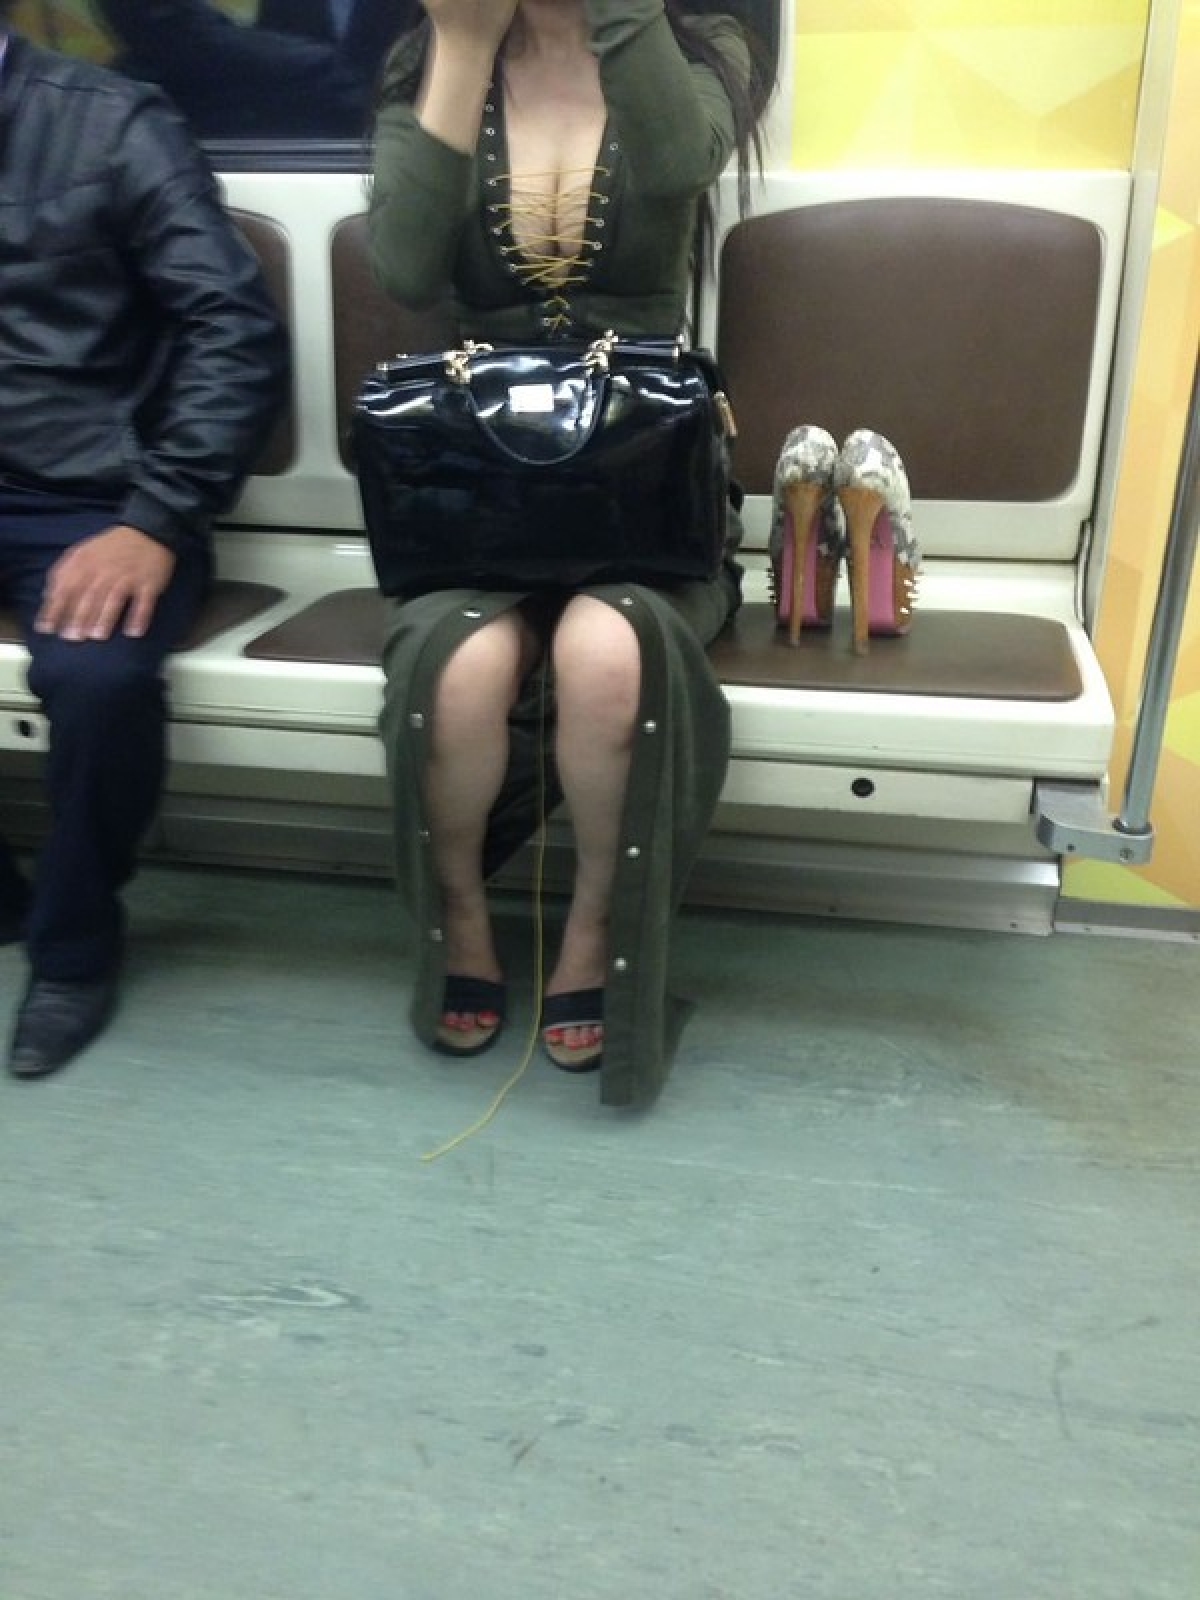 Подглядывание в метро. Ноги в транспорте. Под юбкой в метрополитене. Ножки в общественном транспорте. Женские ноги в транспорте.